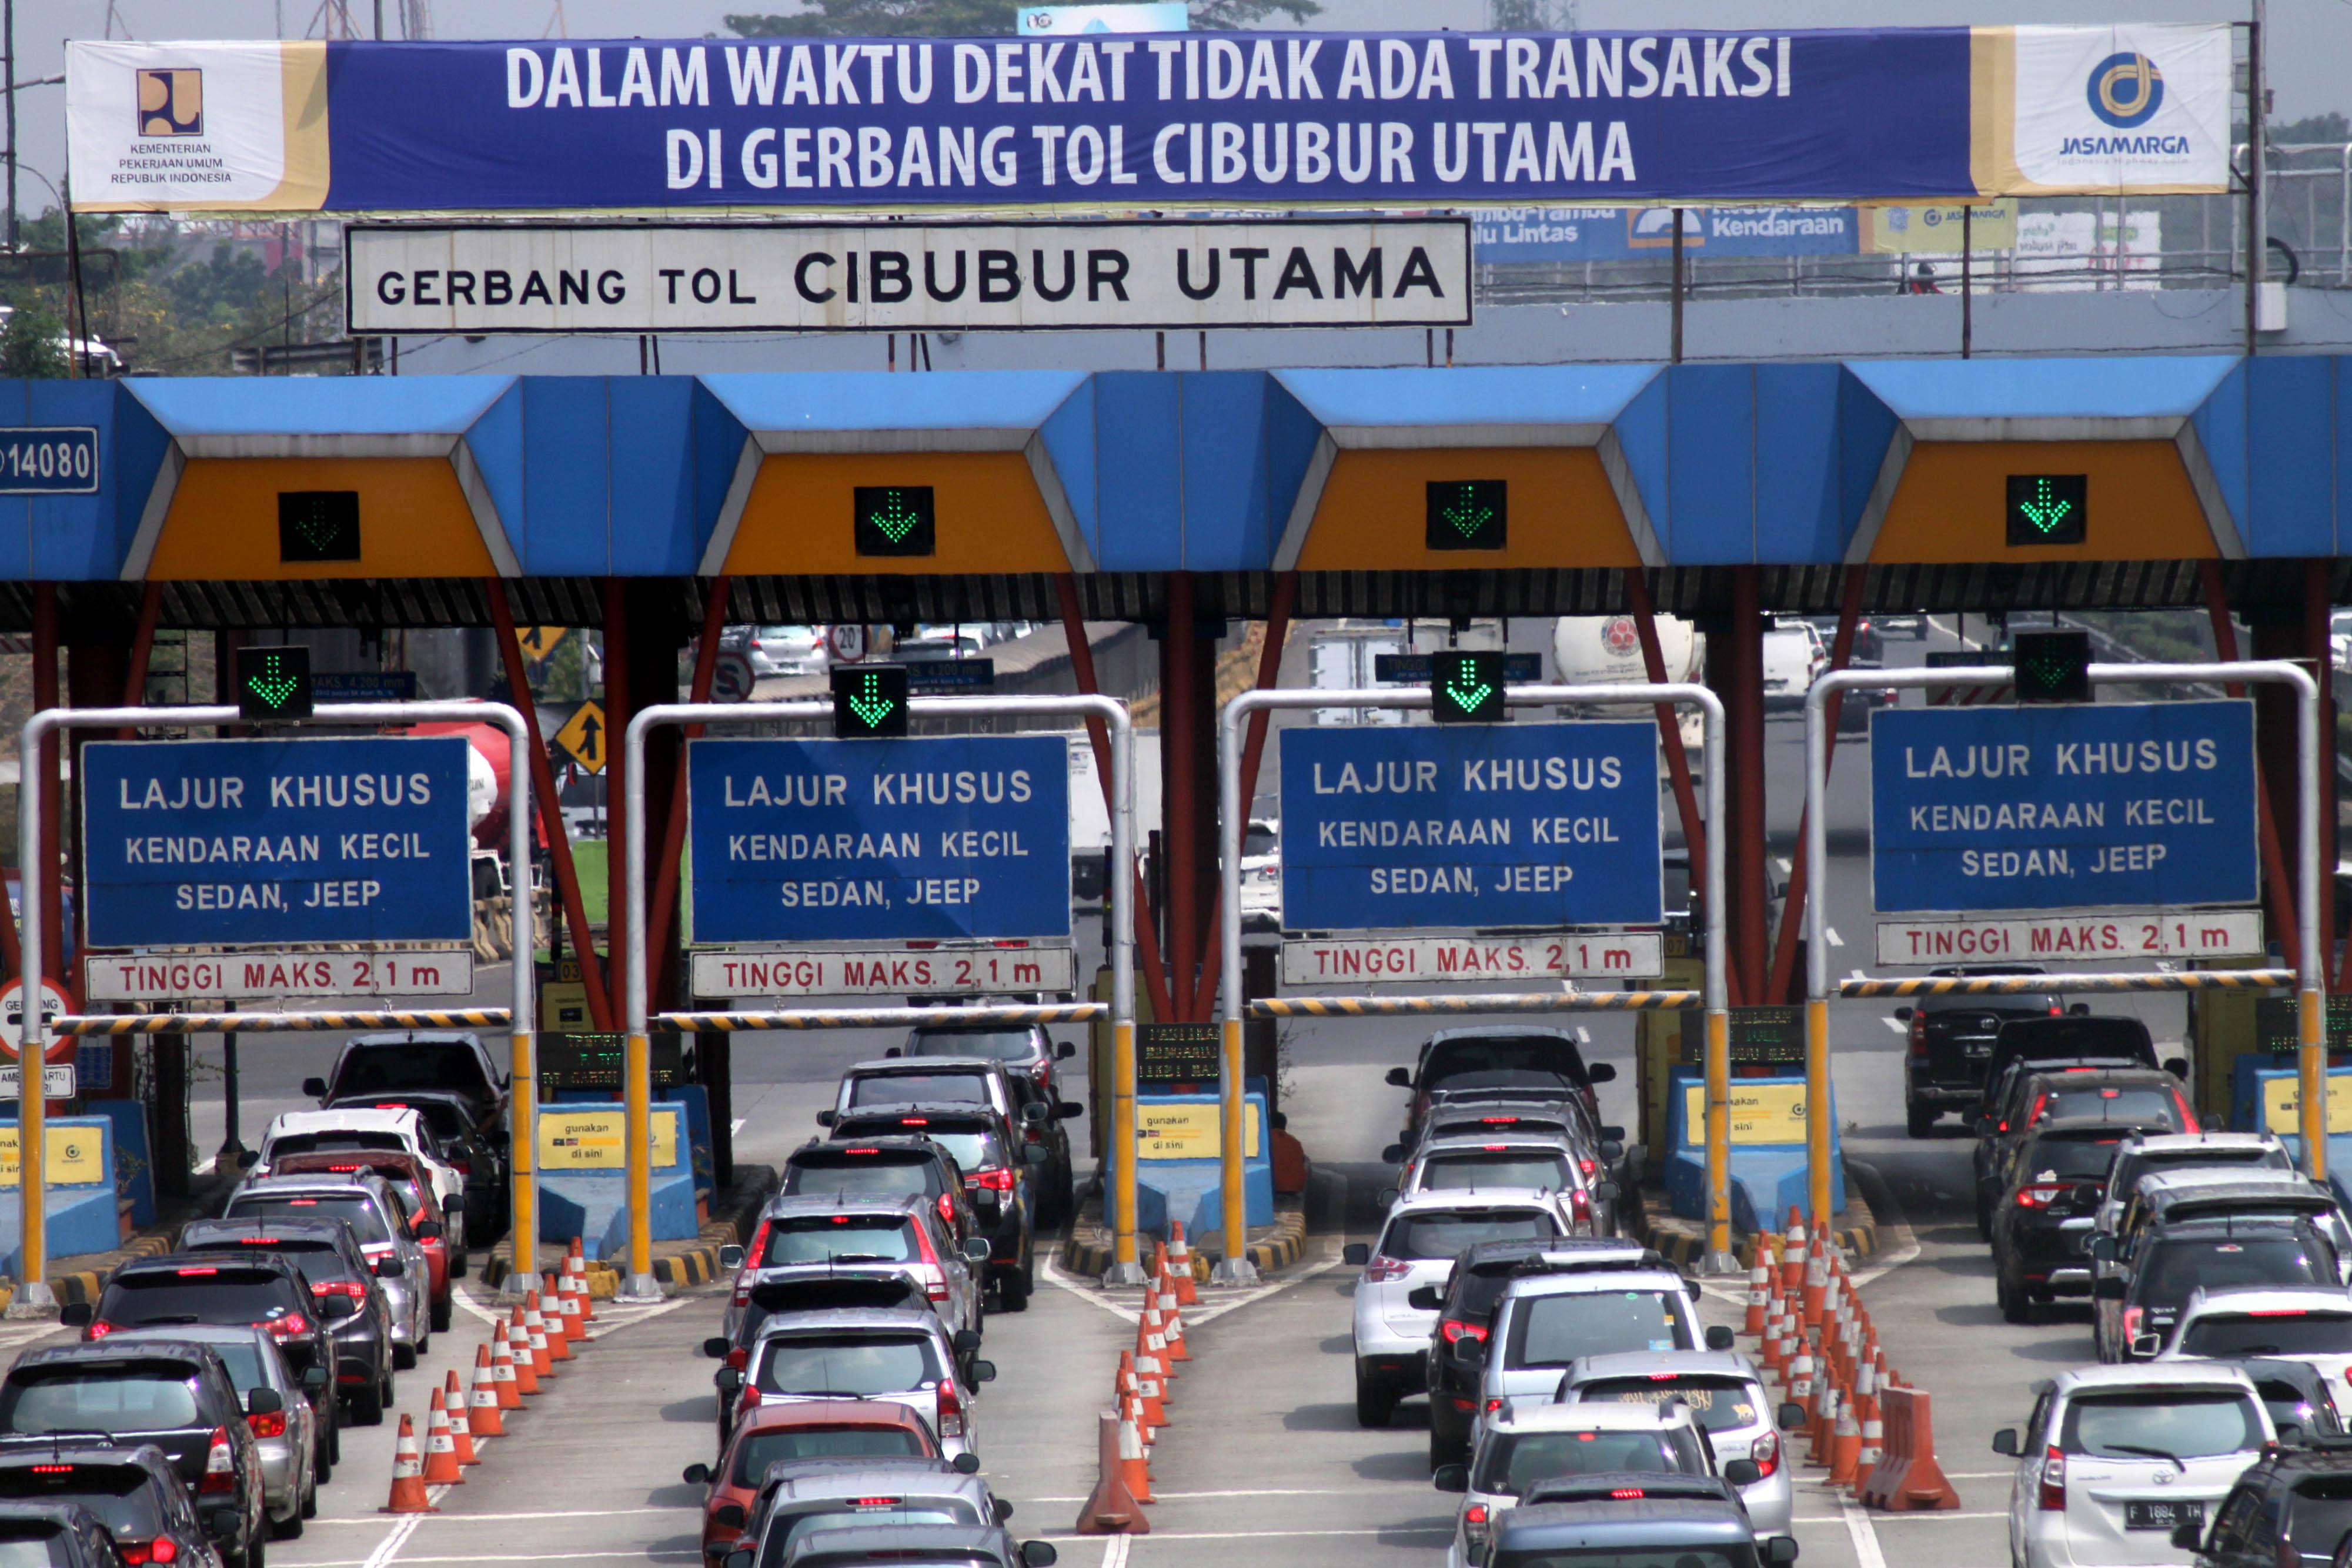 Jasa Marga Bidik Dua Tol Trans Jawa Milik Waskita